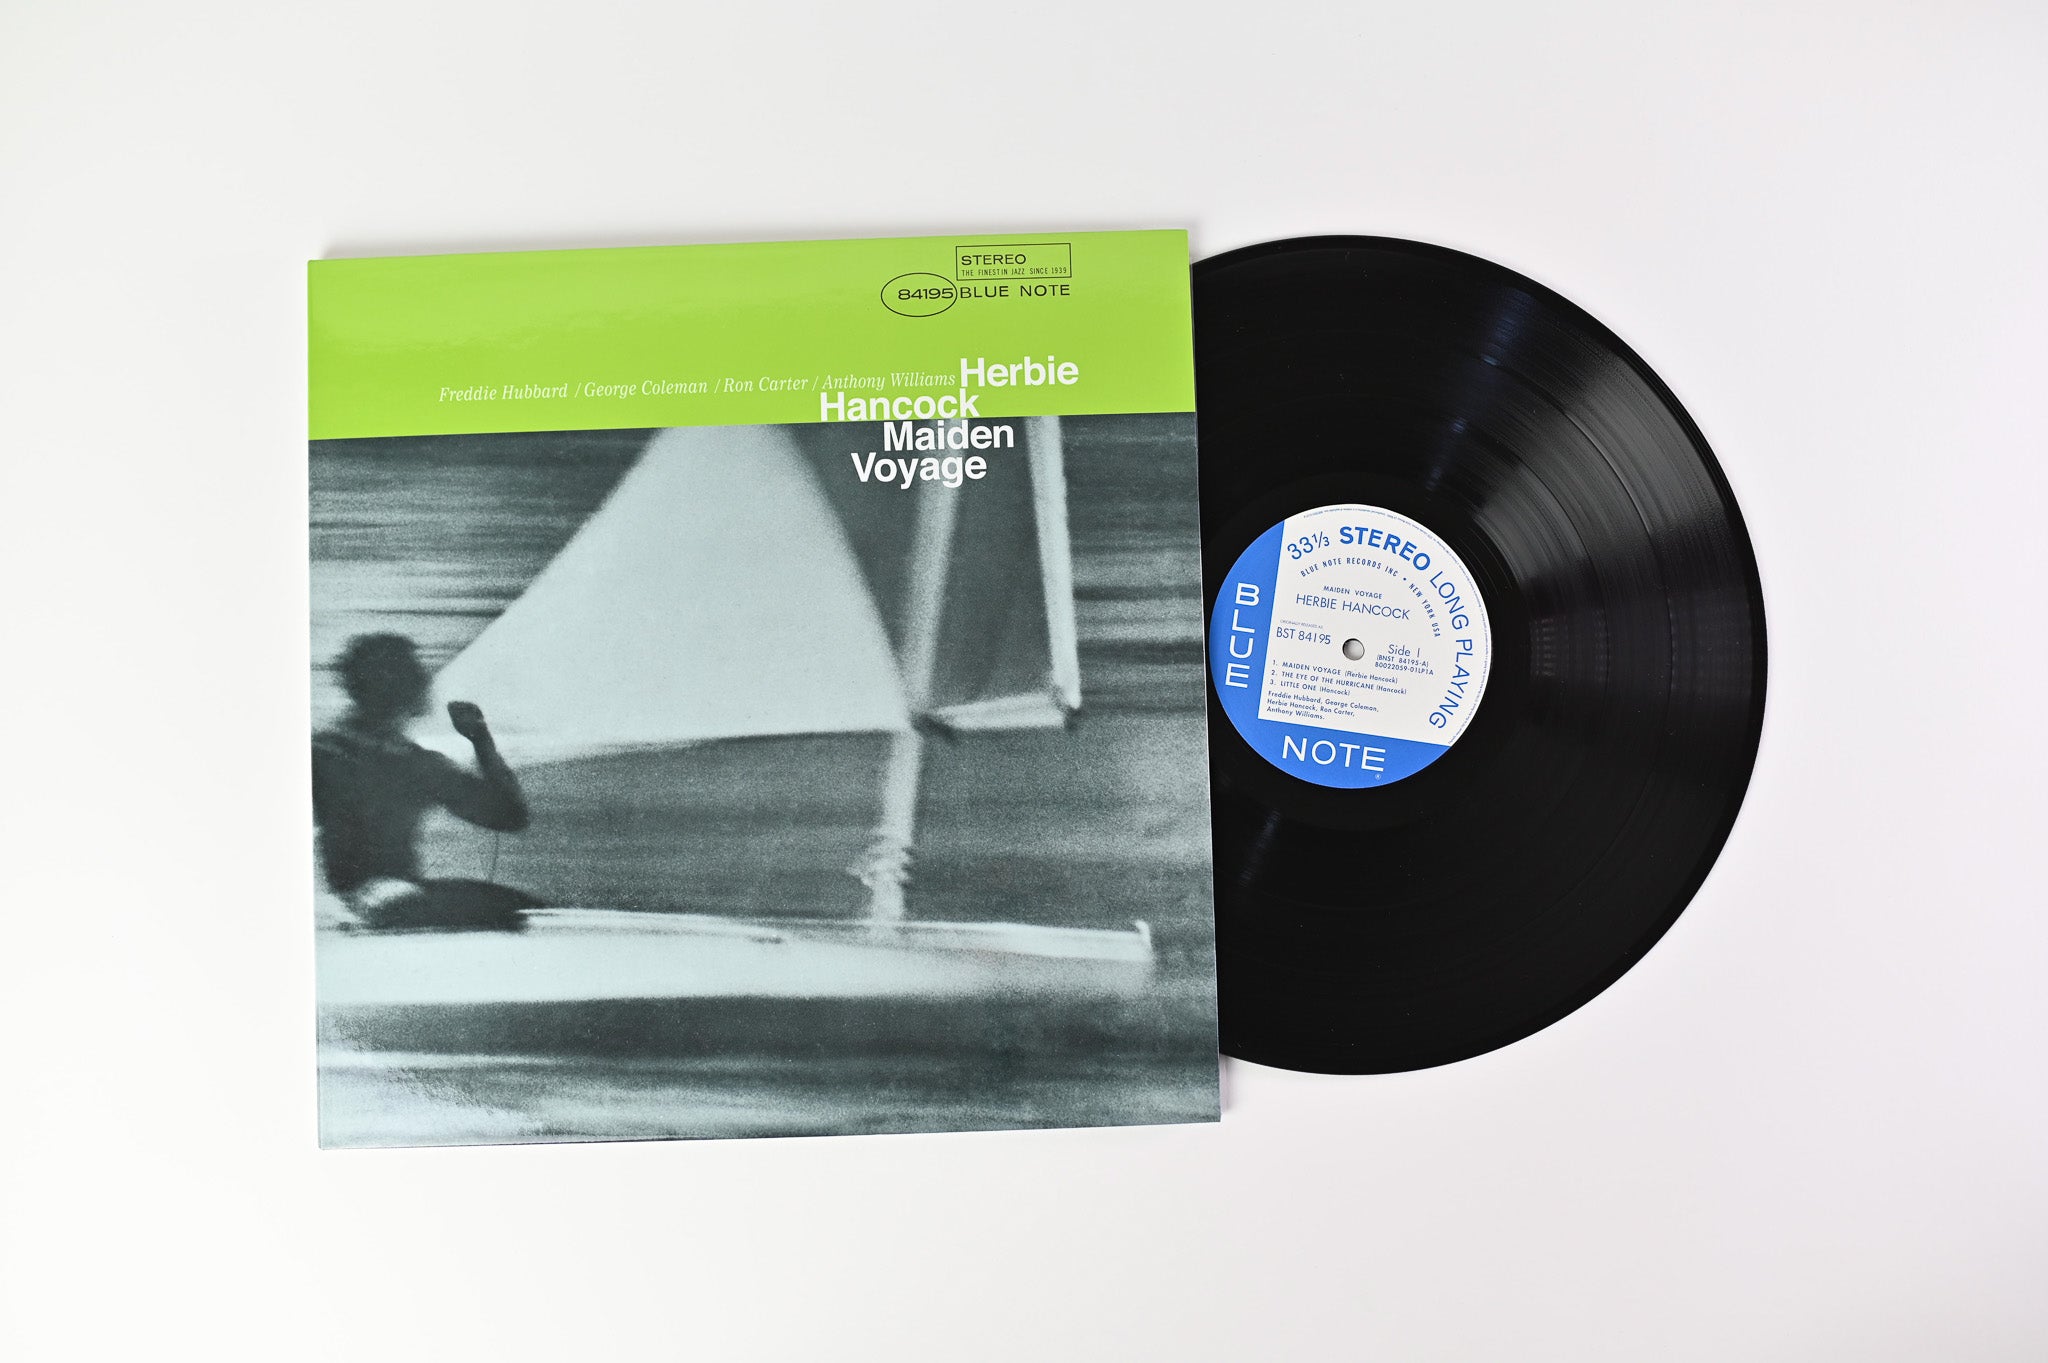 Herbie Hancock - Maiden Voyage on Blue Note Music Matters SRX Ltd Reissue